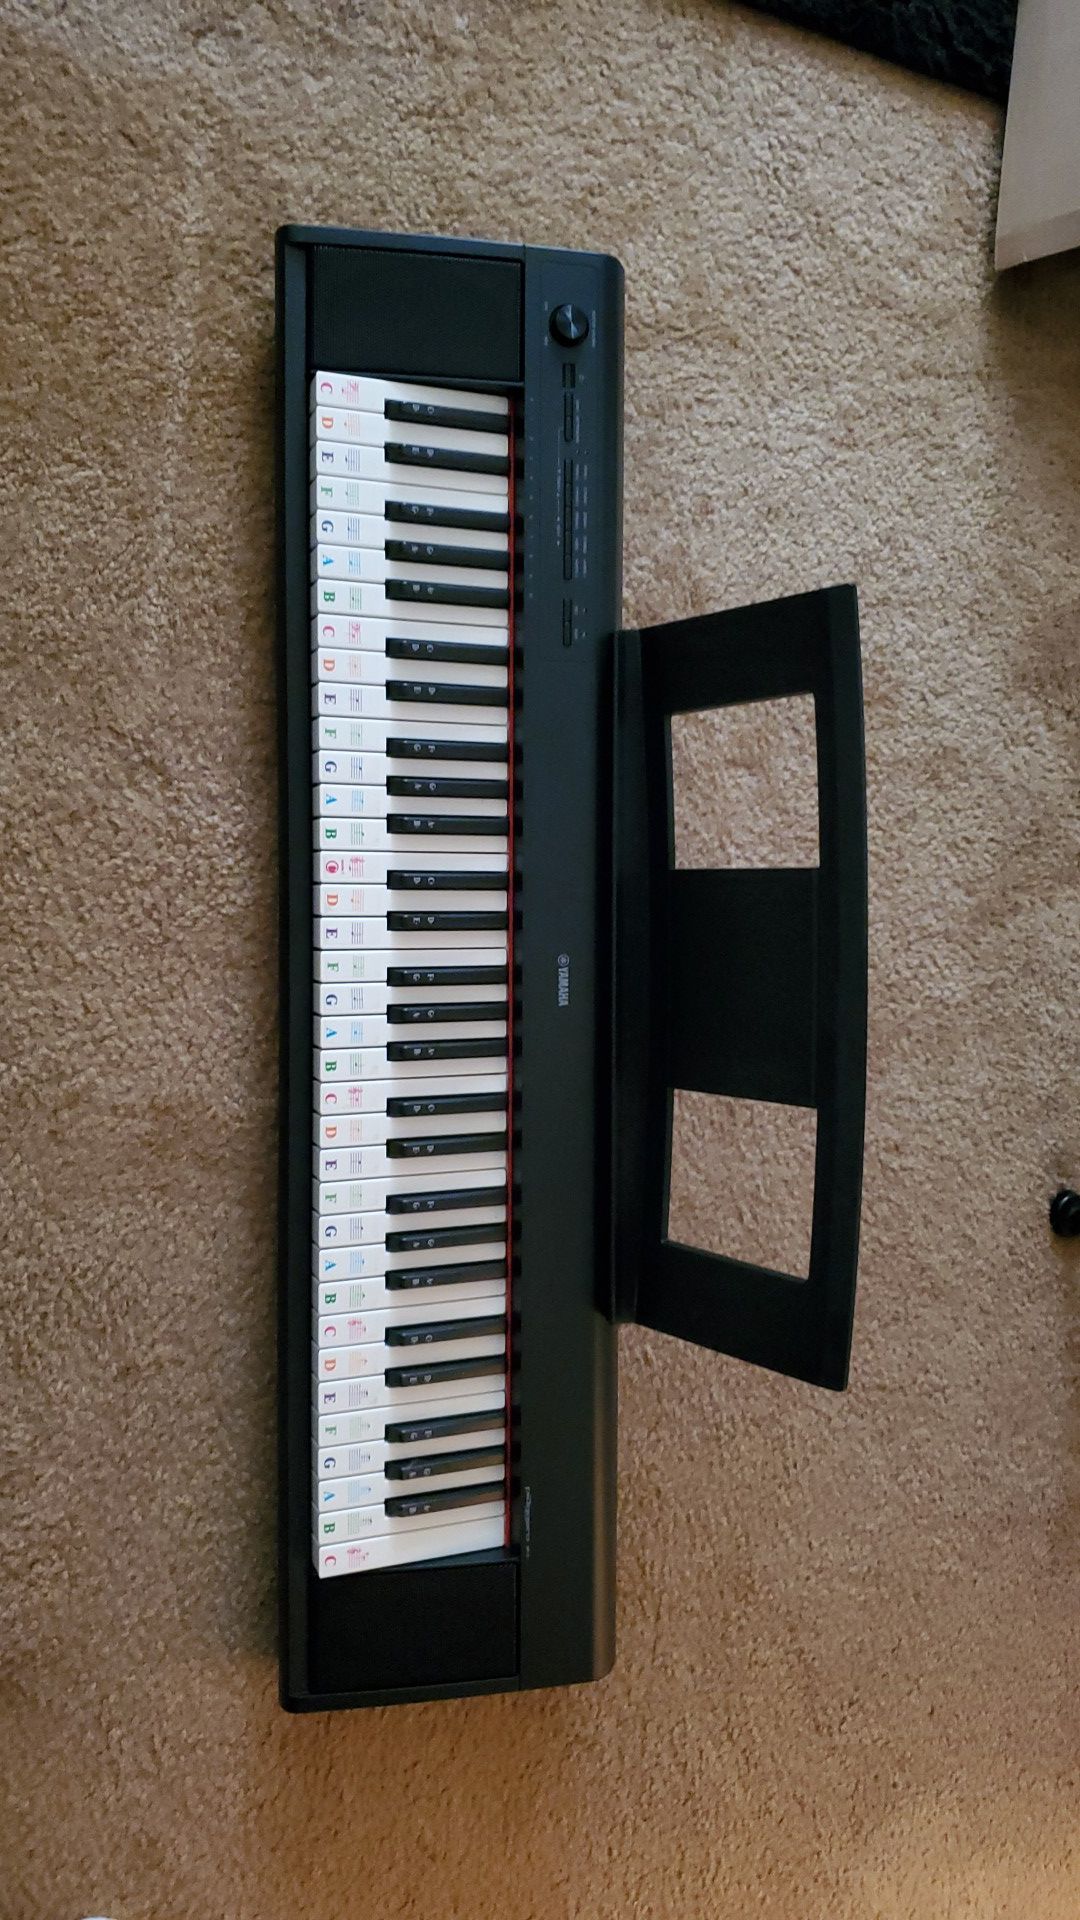 Yamaha keyboard 61 keys